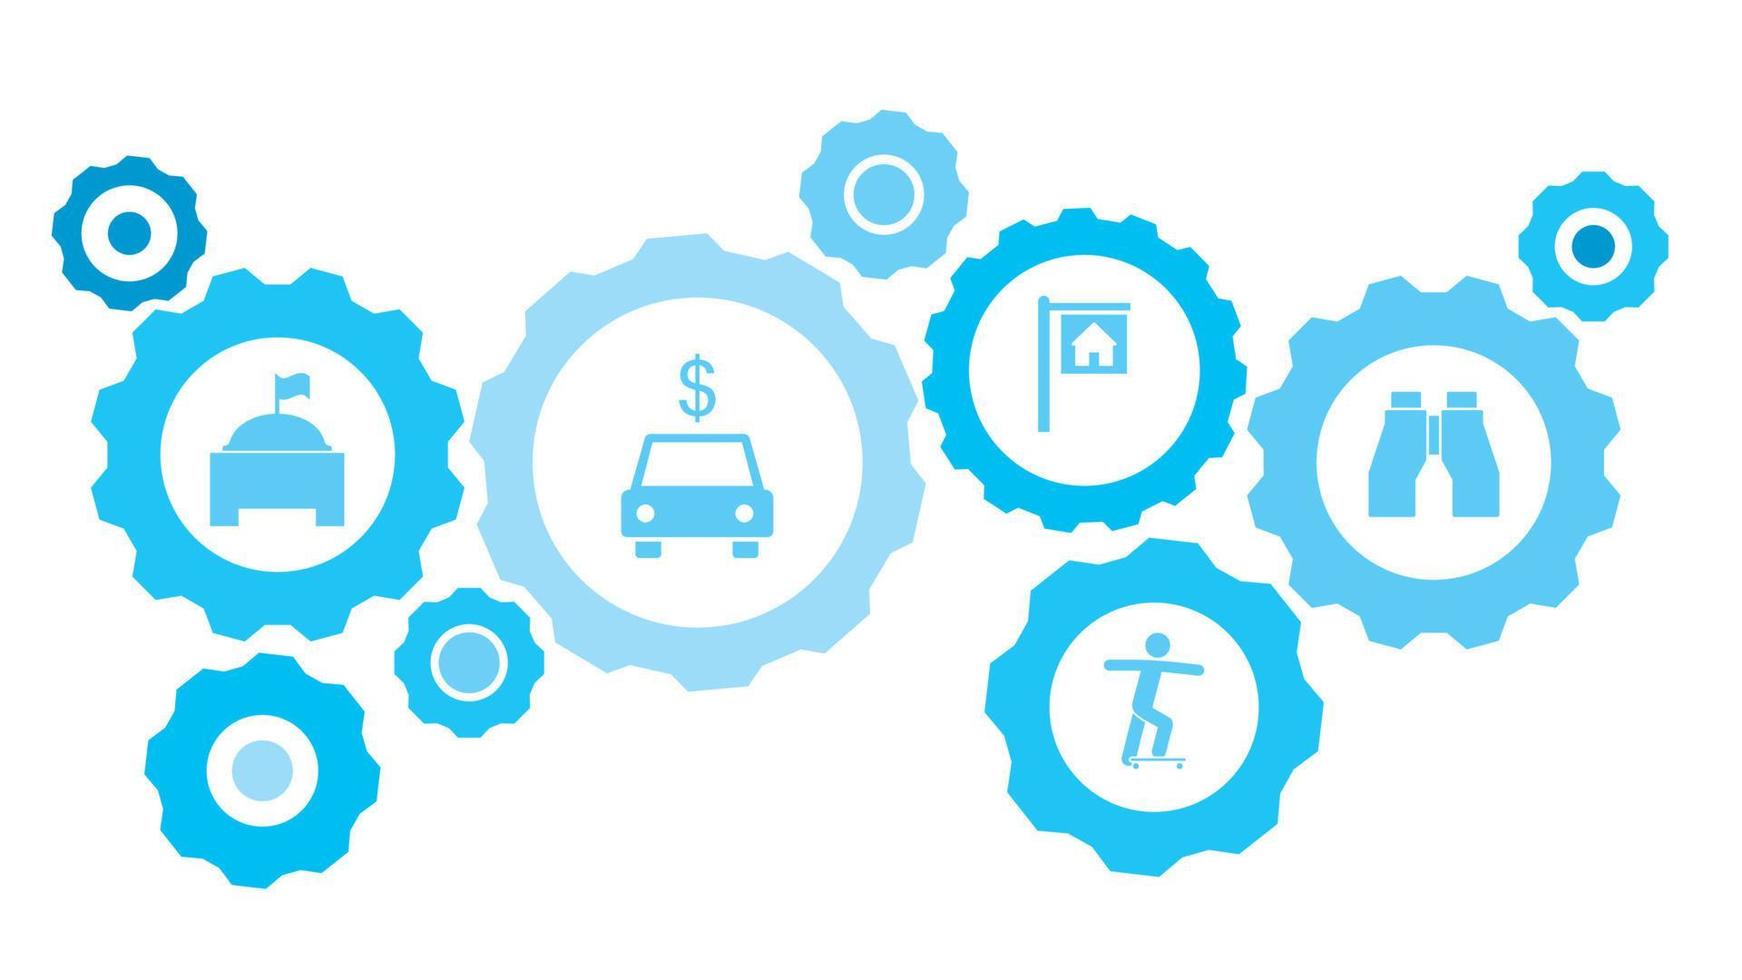 kikare redskap blå ikon uppsättning. abstrakt bakgrund med ansluten kugghjul och ikoner för logistik, service, frakt, distribution, transport, marknadsföra, kommunicera begrepp vektor